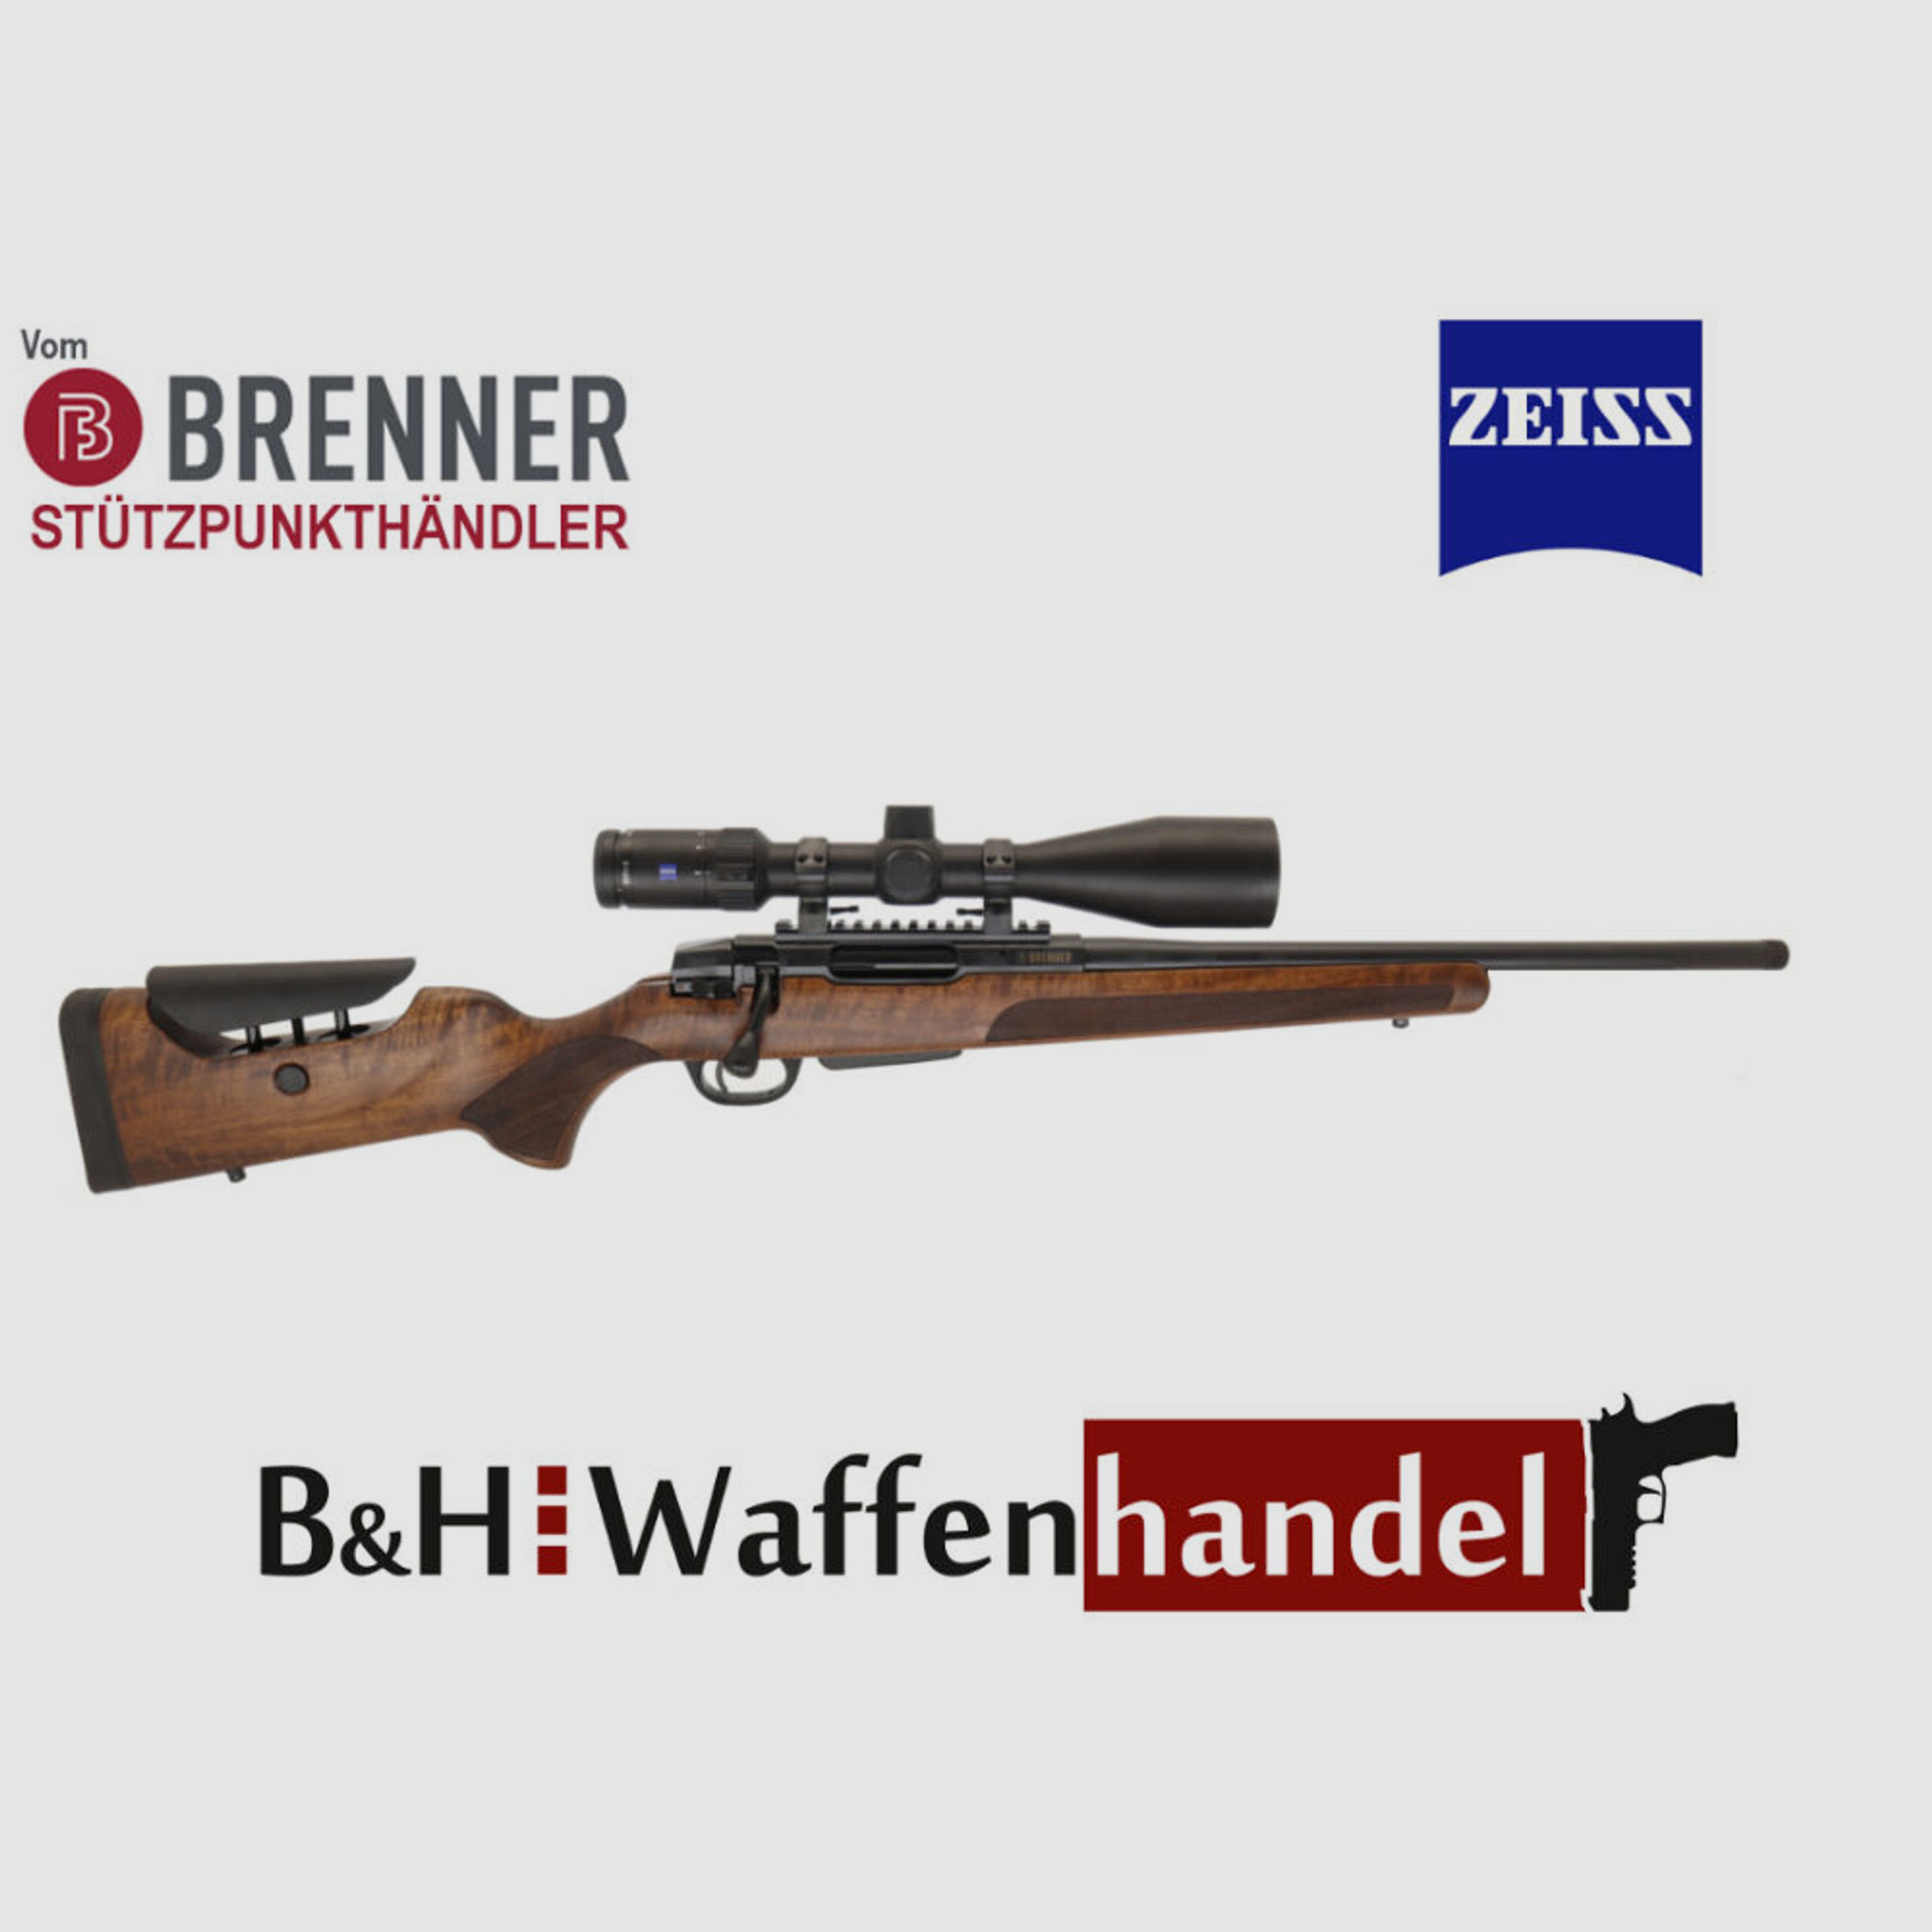 Brenner Komplettpaket:	 BR20 L.E. (Nussbaum, verstellbarer Schaftrücken) mit Zeiss V4 3-12x56